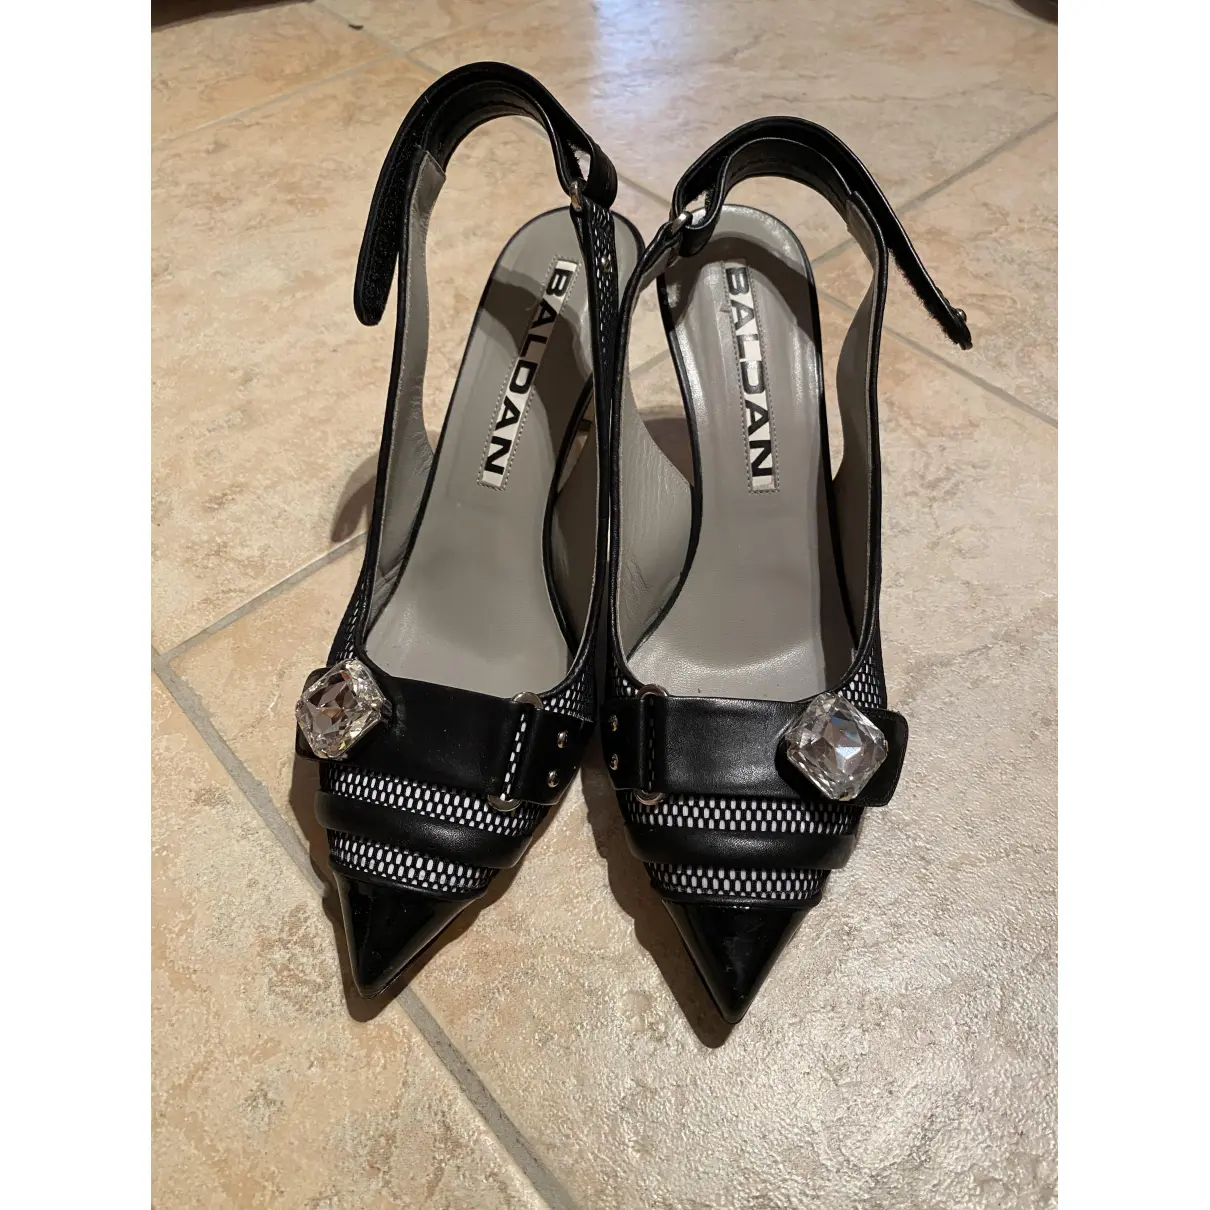 Buy Amanda Baldan Leather heels online